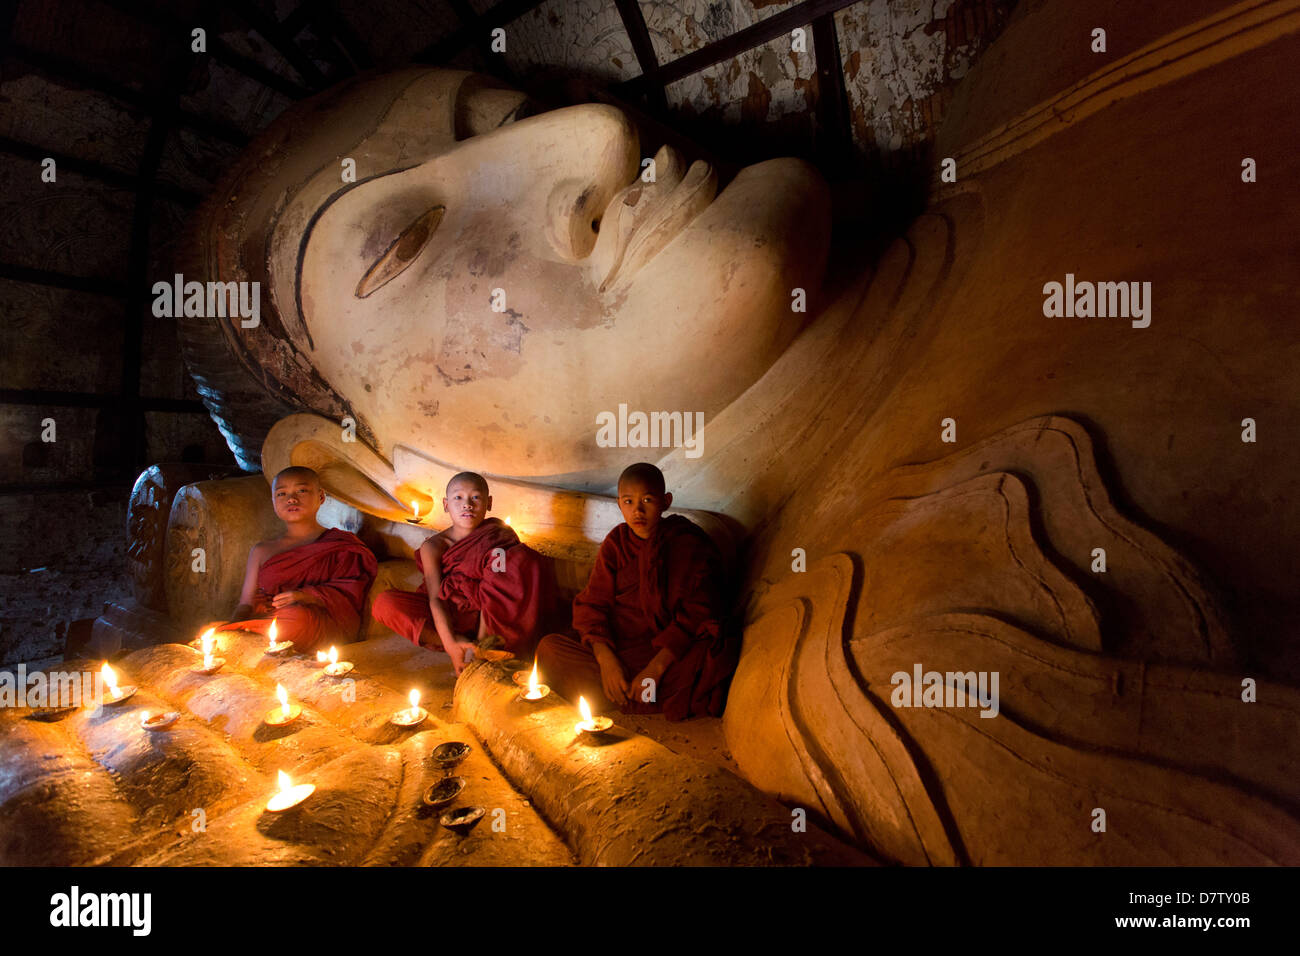 Trois moines bouddhistes novice assis par un grand bouddha couché dans la lumière des bougies, près de Shwesandaw Paya, Bagan, Birmanie Banque D'Images